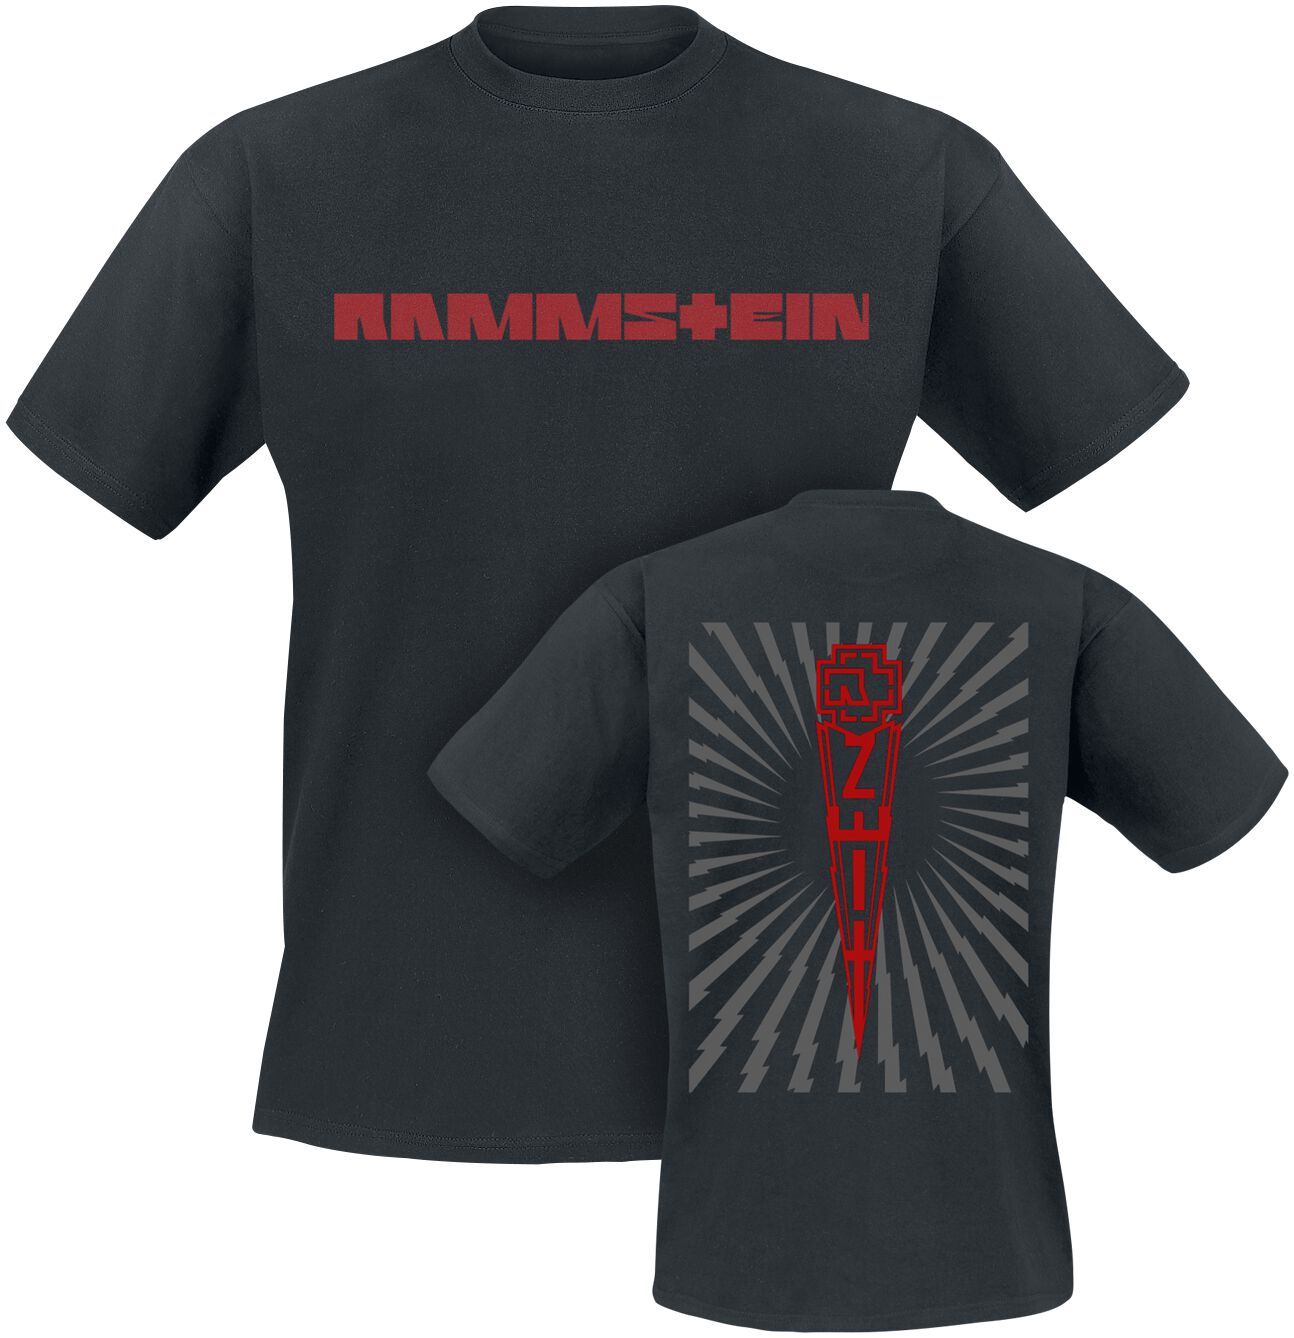 Rammstein T-Shirt - Zeit - S bis 5XL - für Männer - Größe 3XL - schwarz  - Lizenziertes Merchandise! von Rammstein